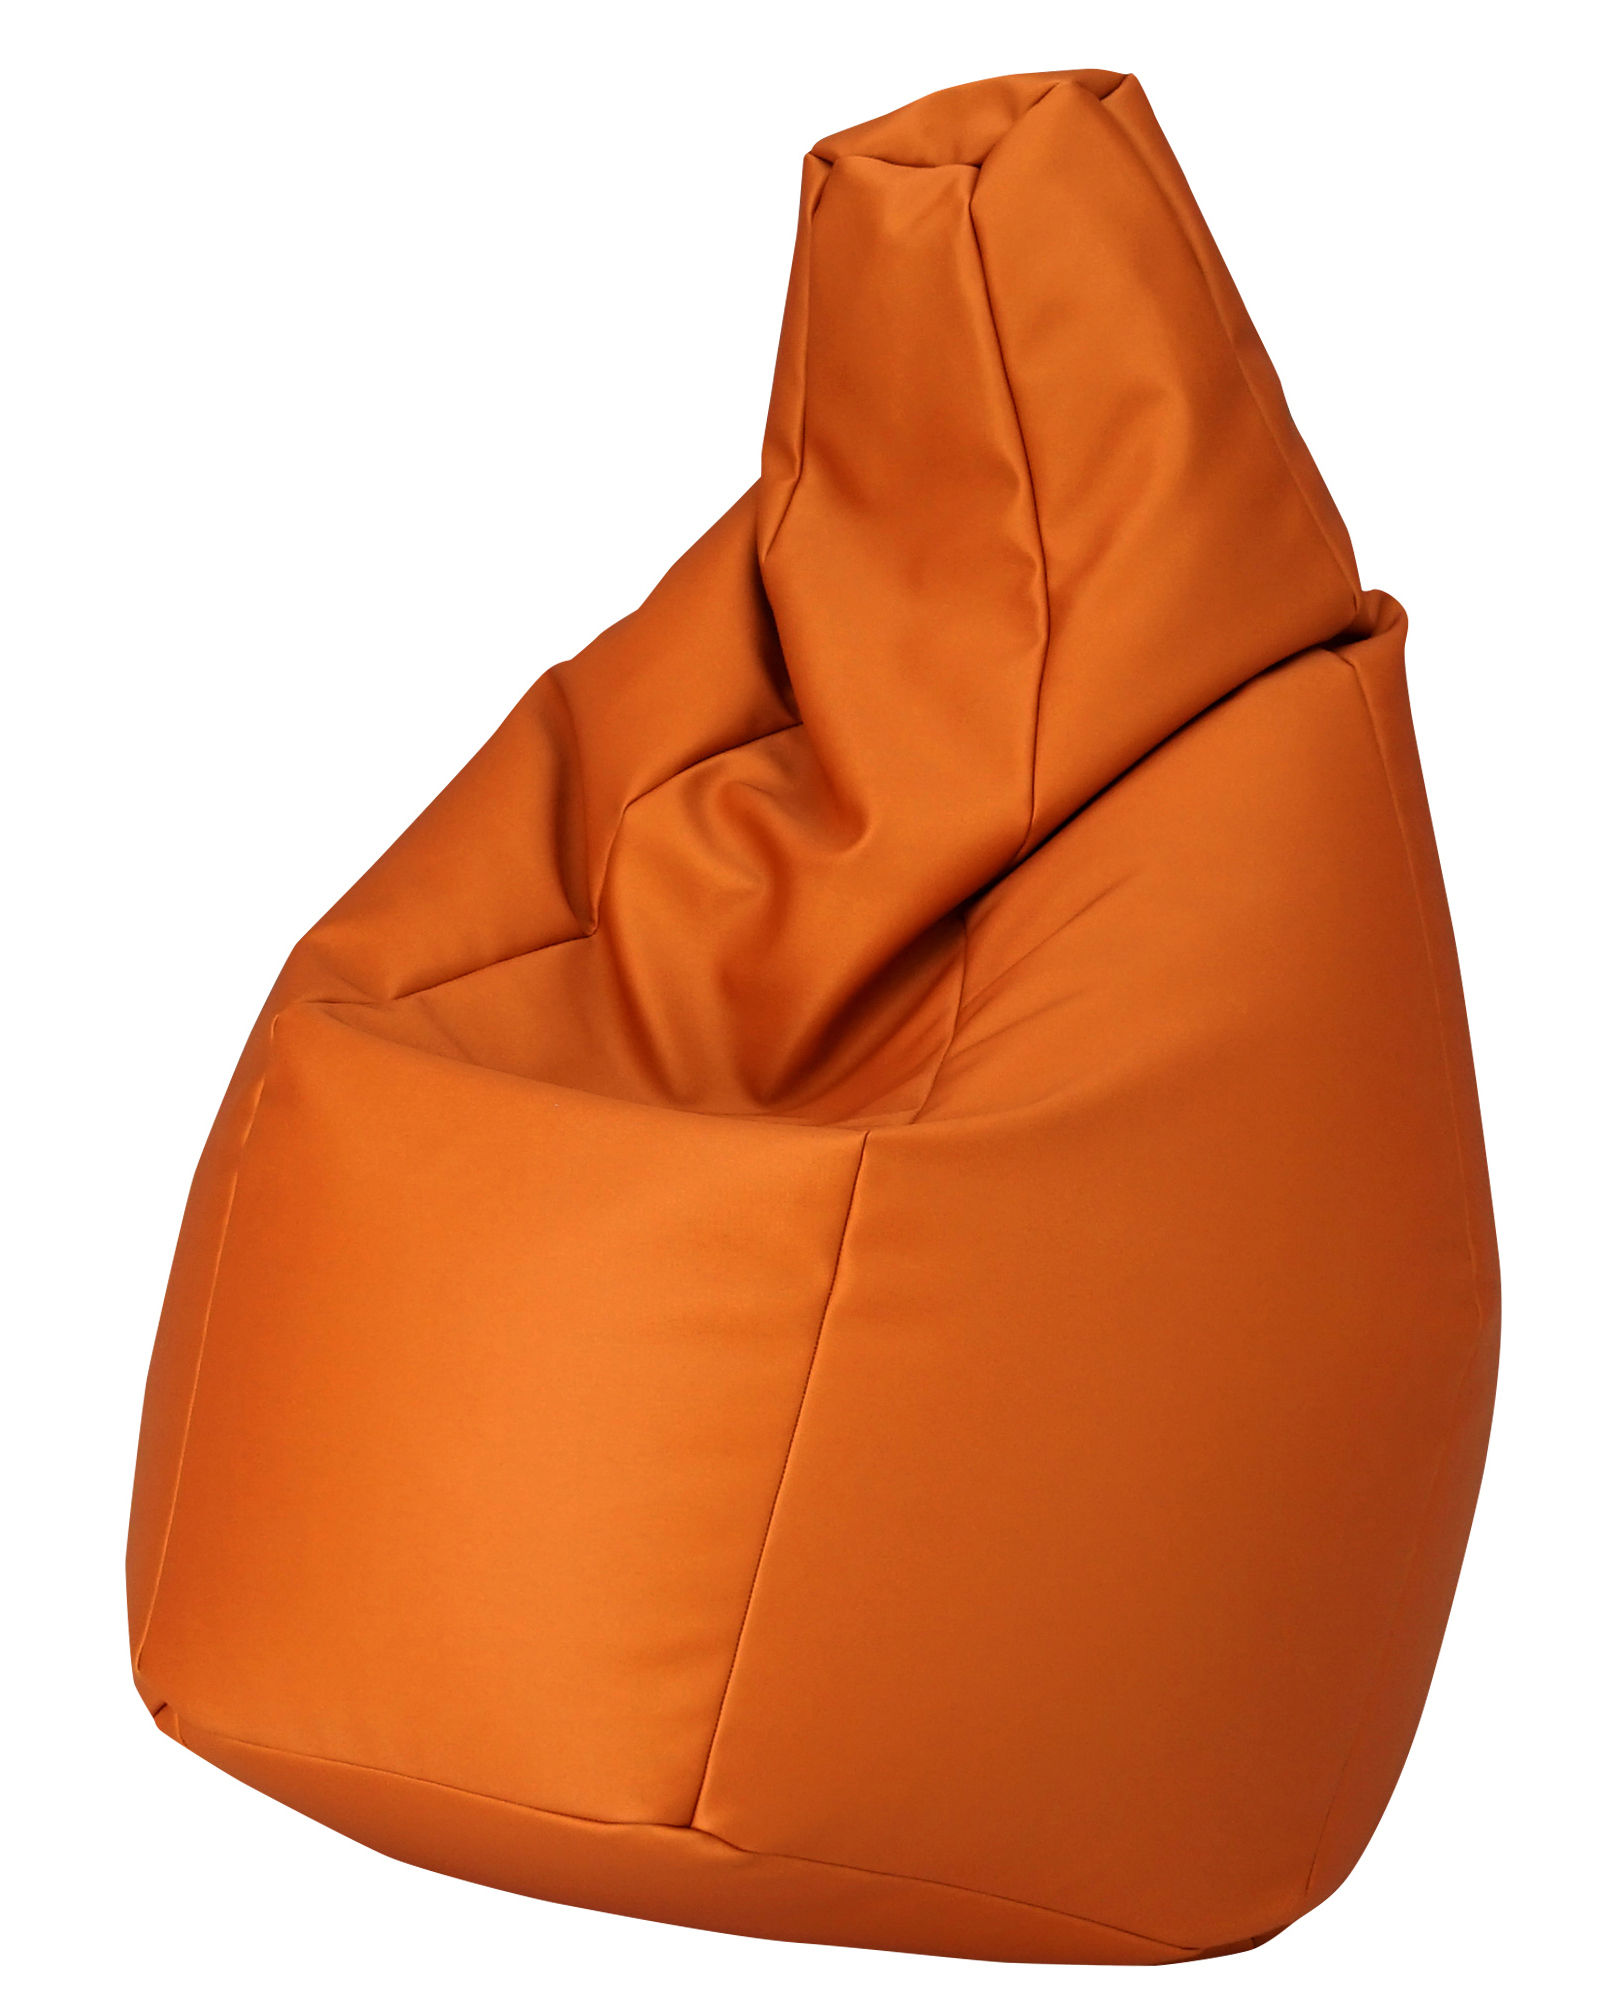 Orange Sacco Outdoor Pouf design Cesare Paolini, Franco Teodoro